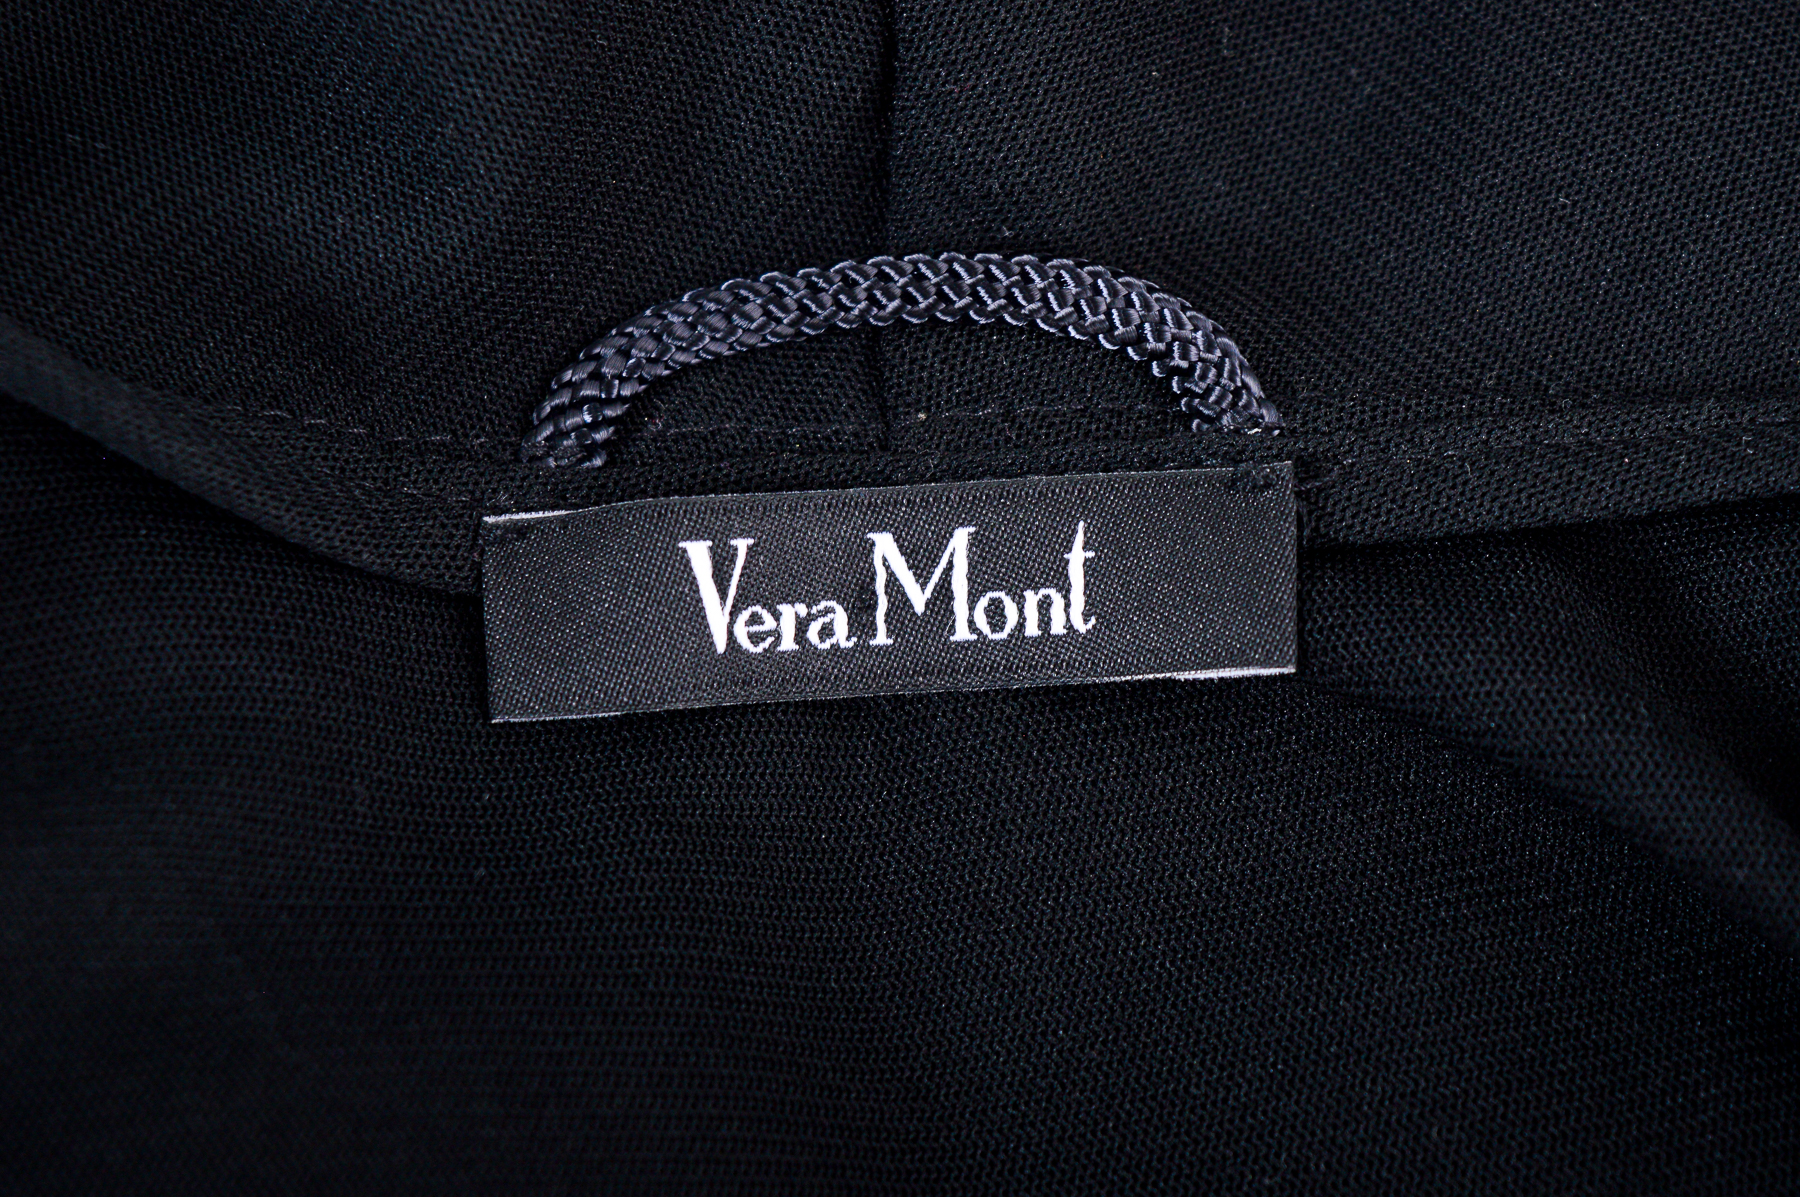 Γυναικείο γιλέκο - Vera Mont - 2